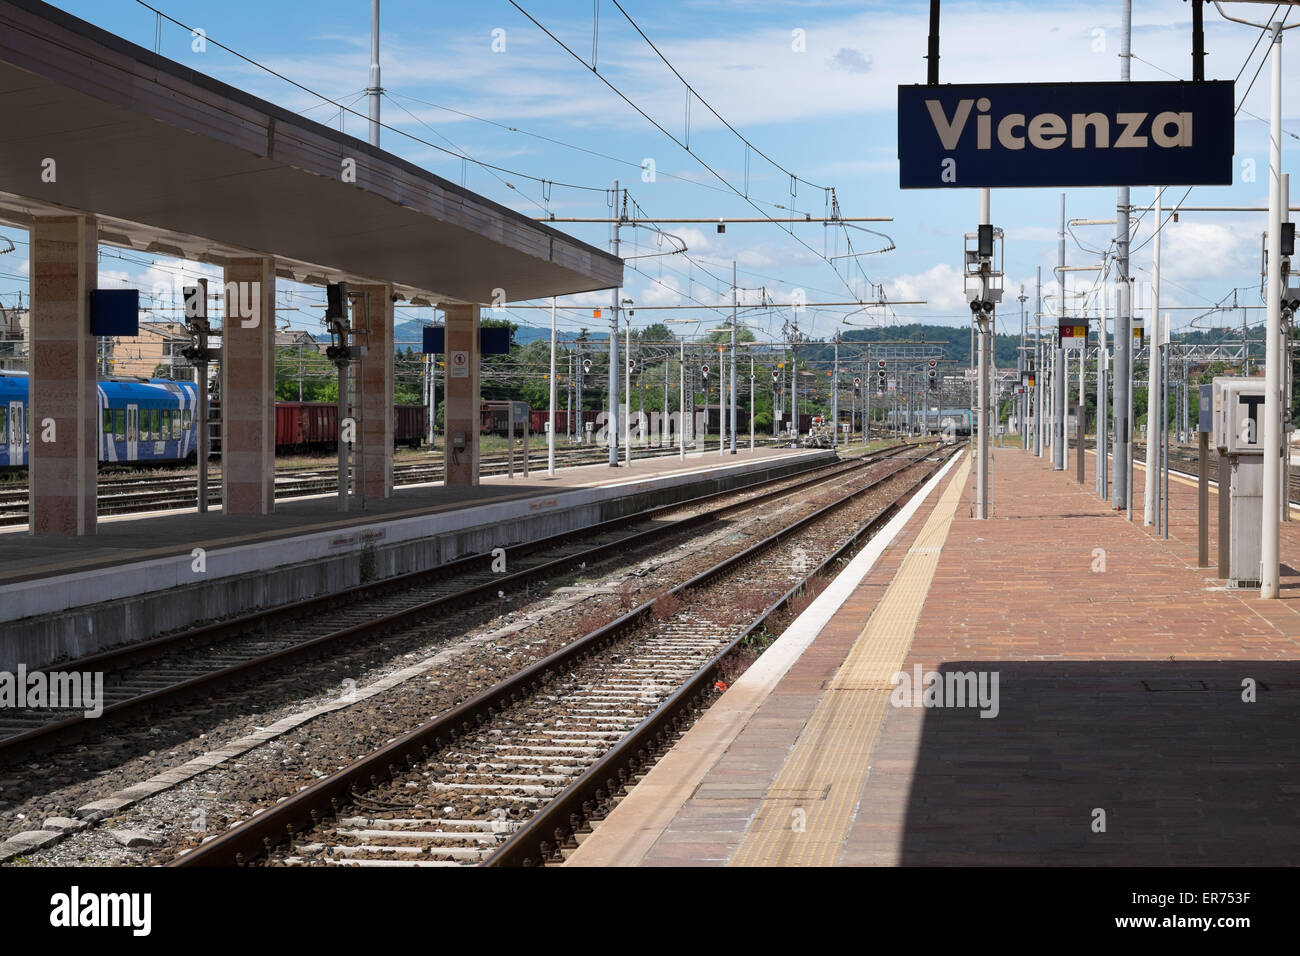 Train station in Vicenza Italy. Stazione Ferroviaria di Vicenza. Stock Photo